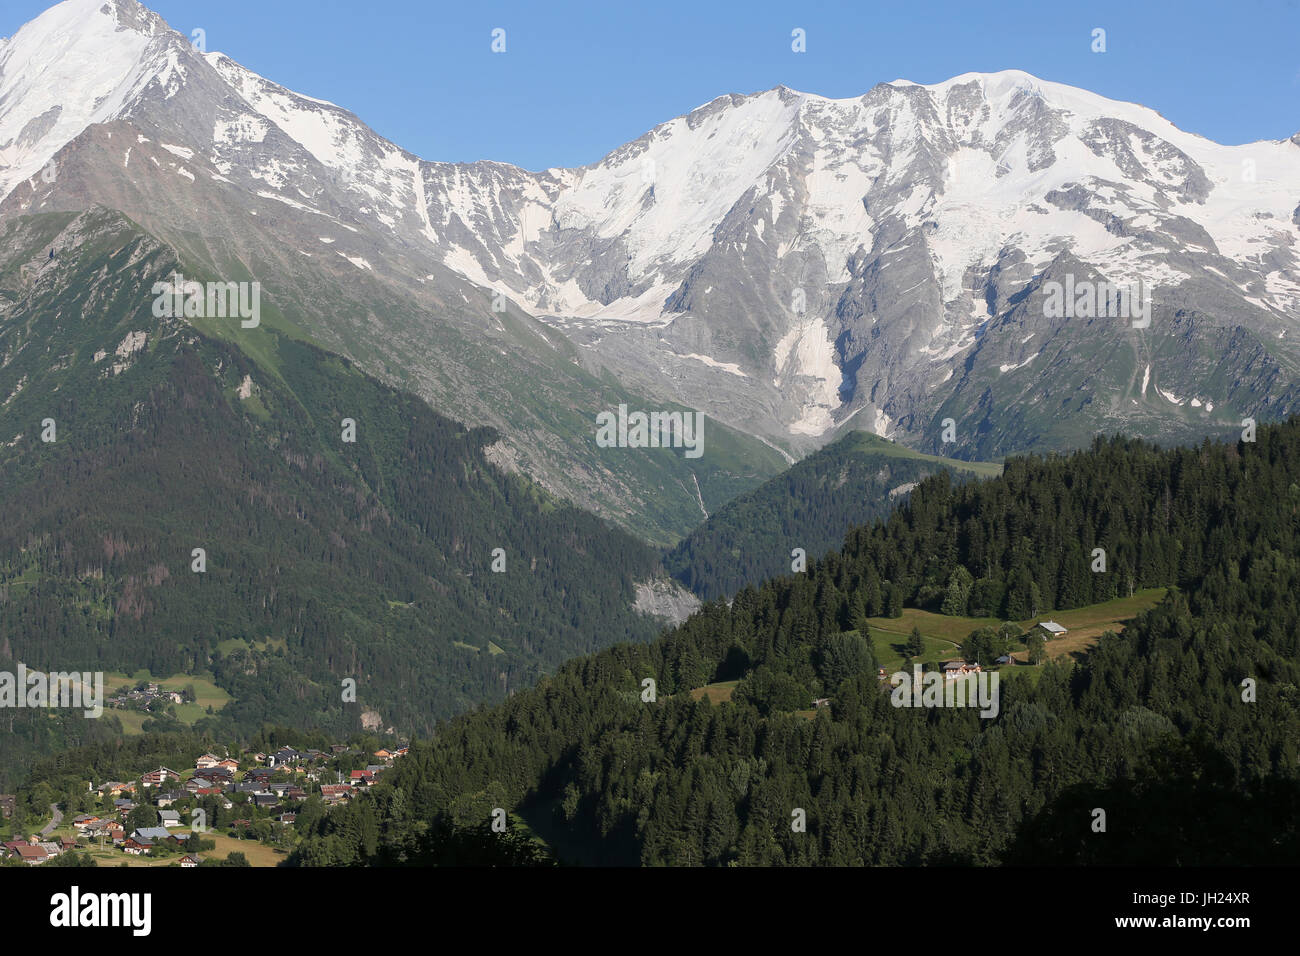 Sulle Alpi francesi. Massiccio del Monte Bianco. Saint Nicolas de Veroce village. La Francia. Foto Stock